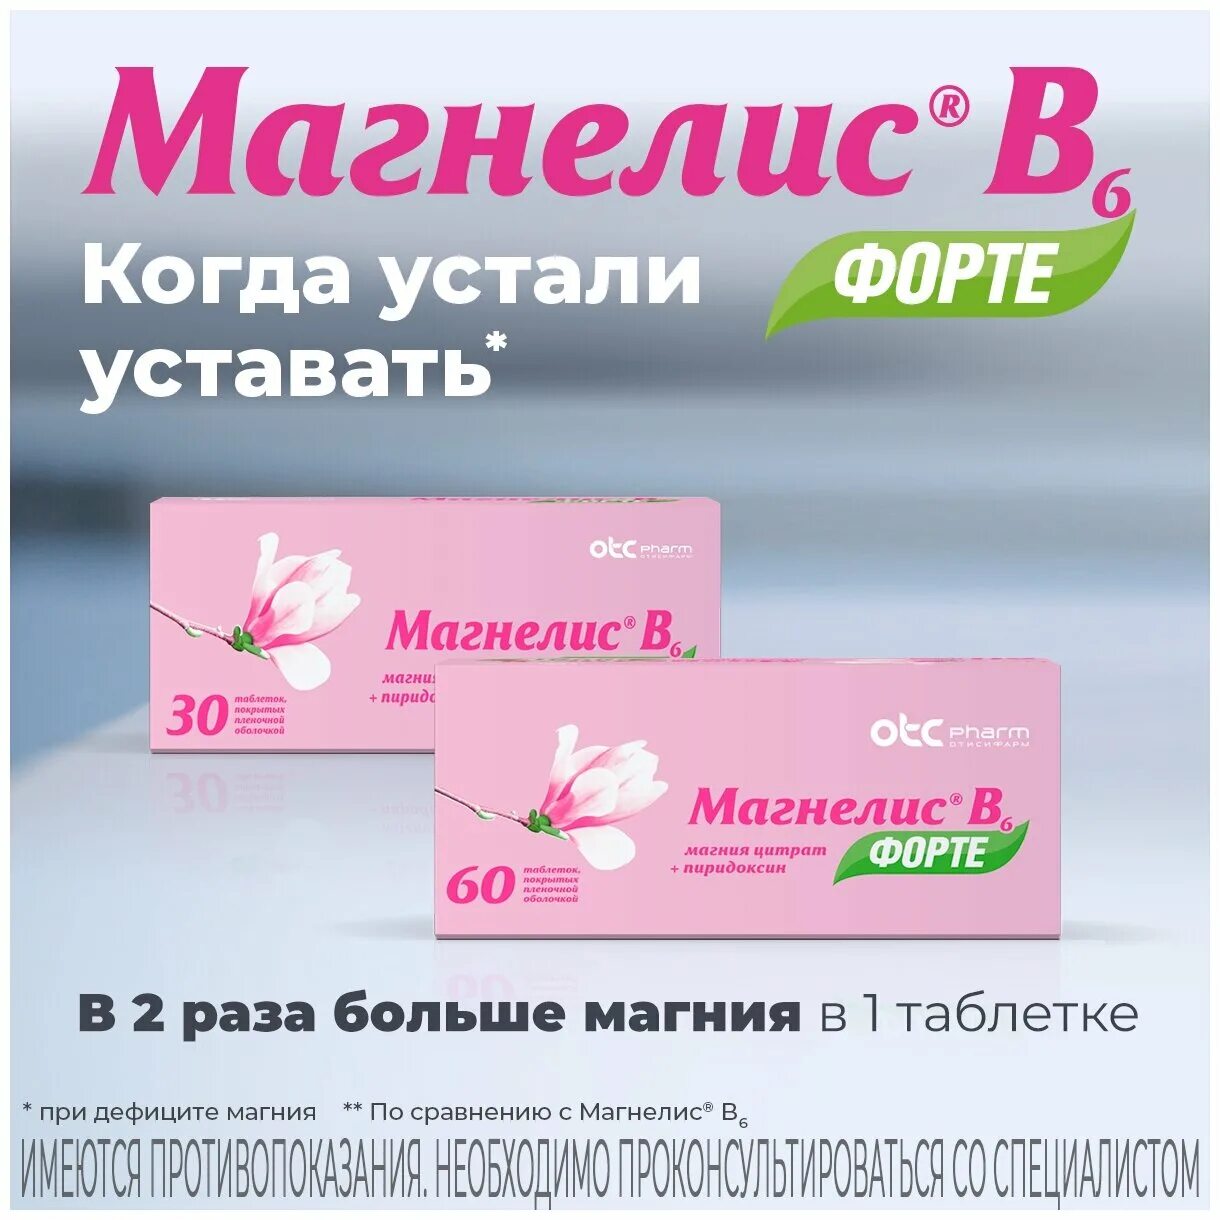 Магнелис в6 форте таблетки цены. Магнелис в6 форте. Магнелис b6 форте. Магнелис в6 форте 90. Магнелис б6 розовая упаковка.